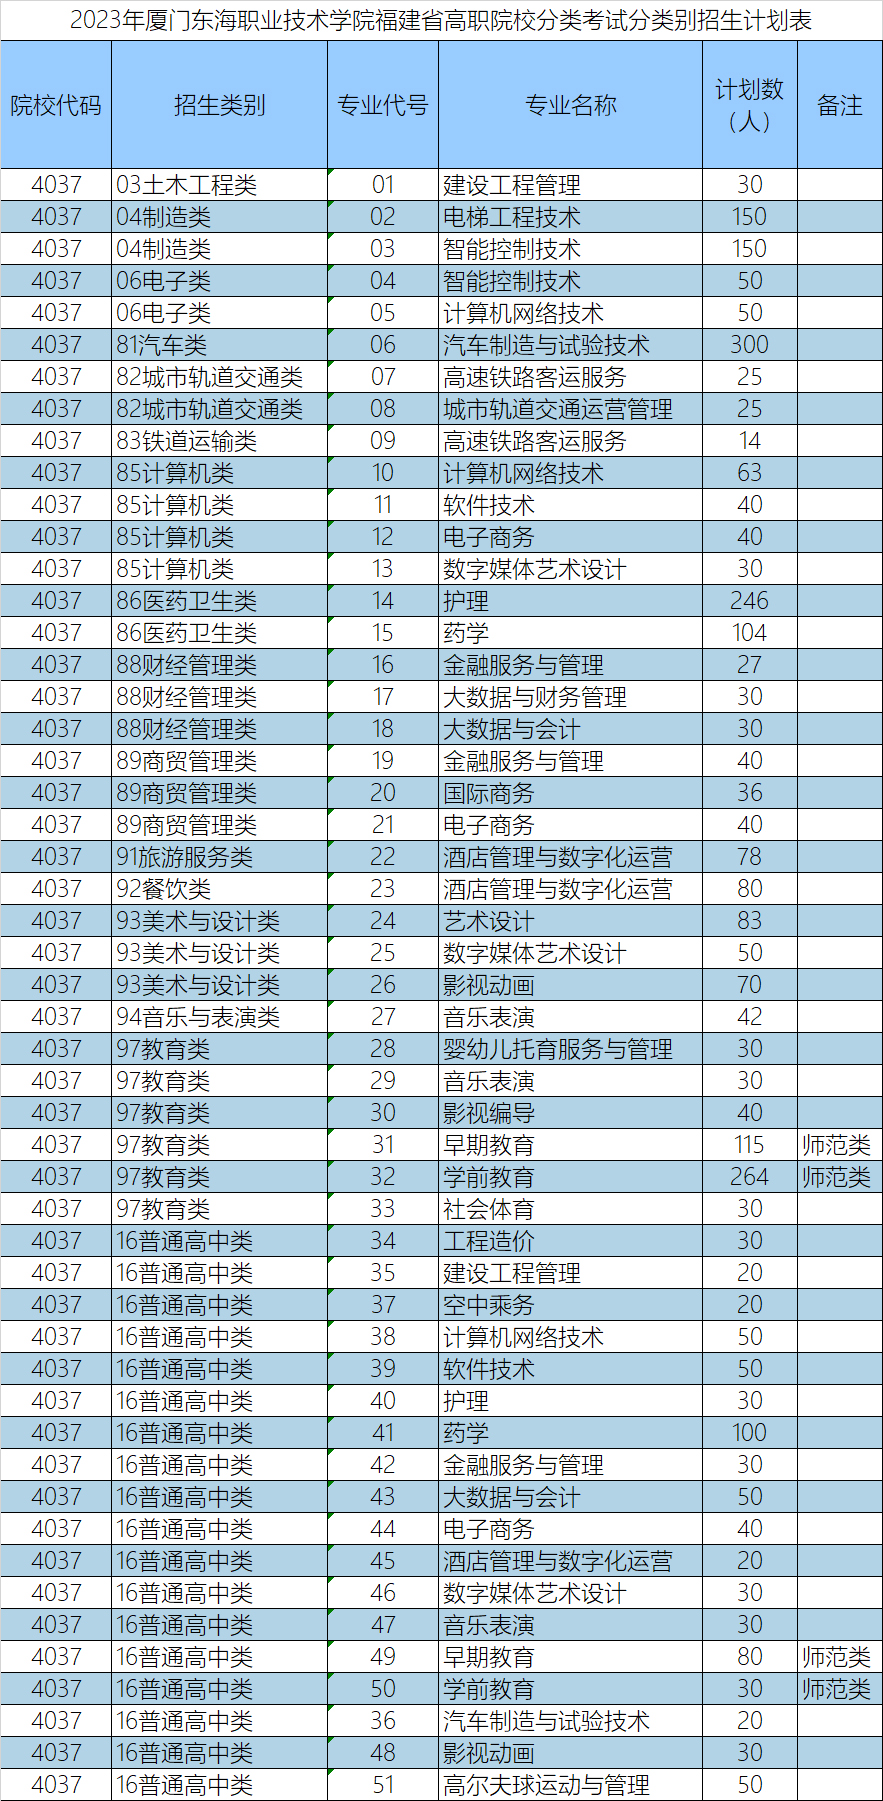 厦门东海职业技术学院2023年高职分类招考招生计划表